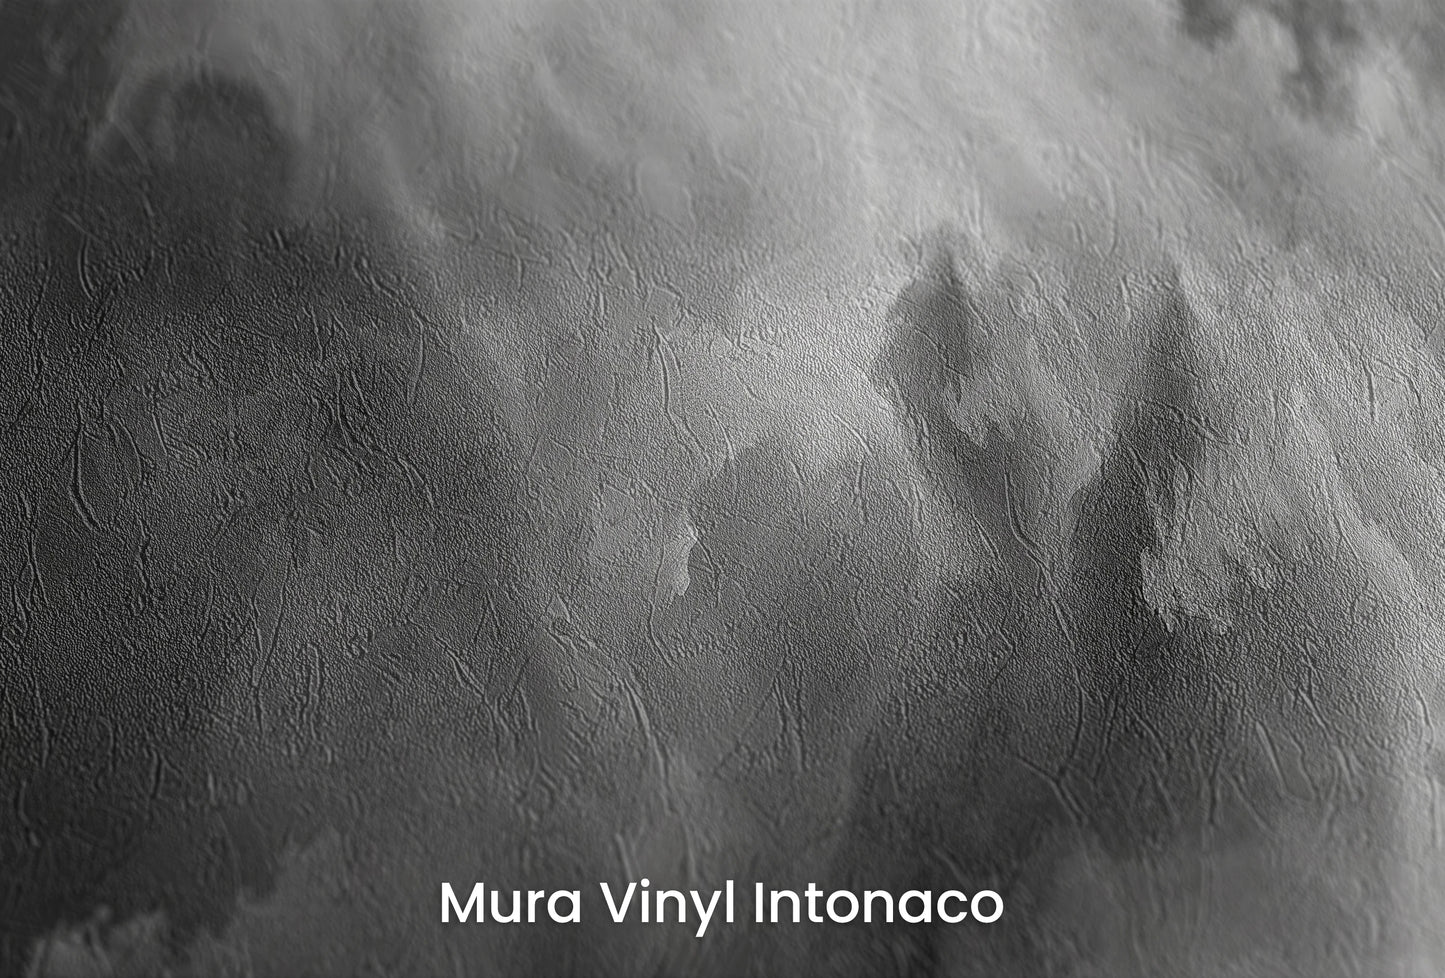 Zbliżenie na artystyczną fototapetę o nazwie Abstract Storm na podłożu Mura Vinyl Intonaco - struktura tartego tynku.